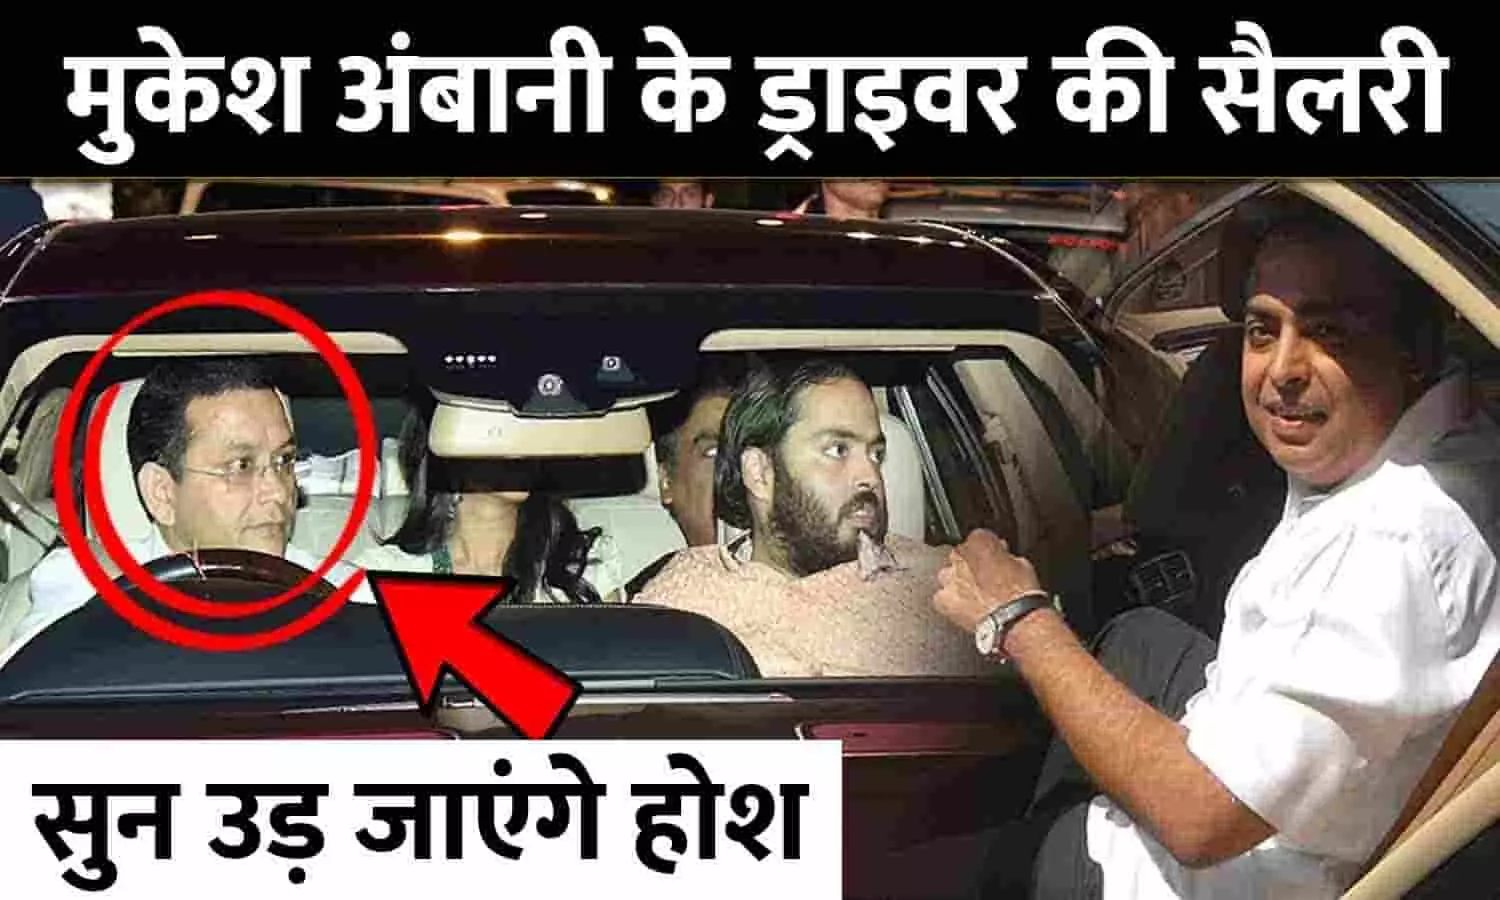 Mukesh Ambani Ke Driver Ki Salary Kitni Hai: मुकेश अंबानी के ड्राइवर की सैलरी कितनी है?